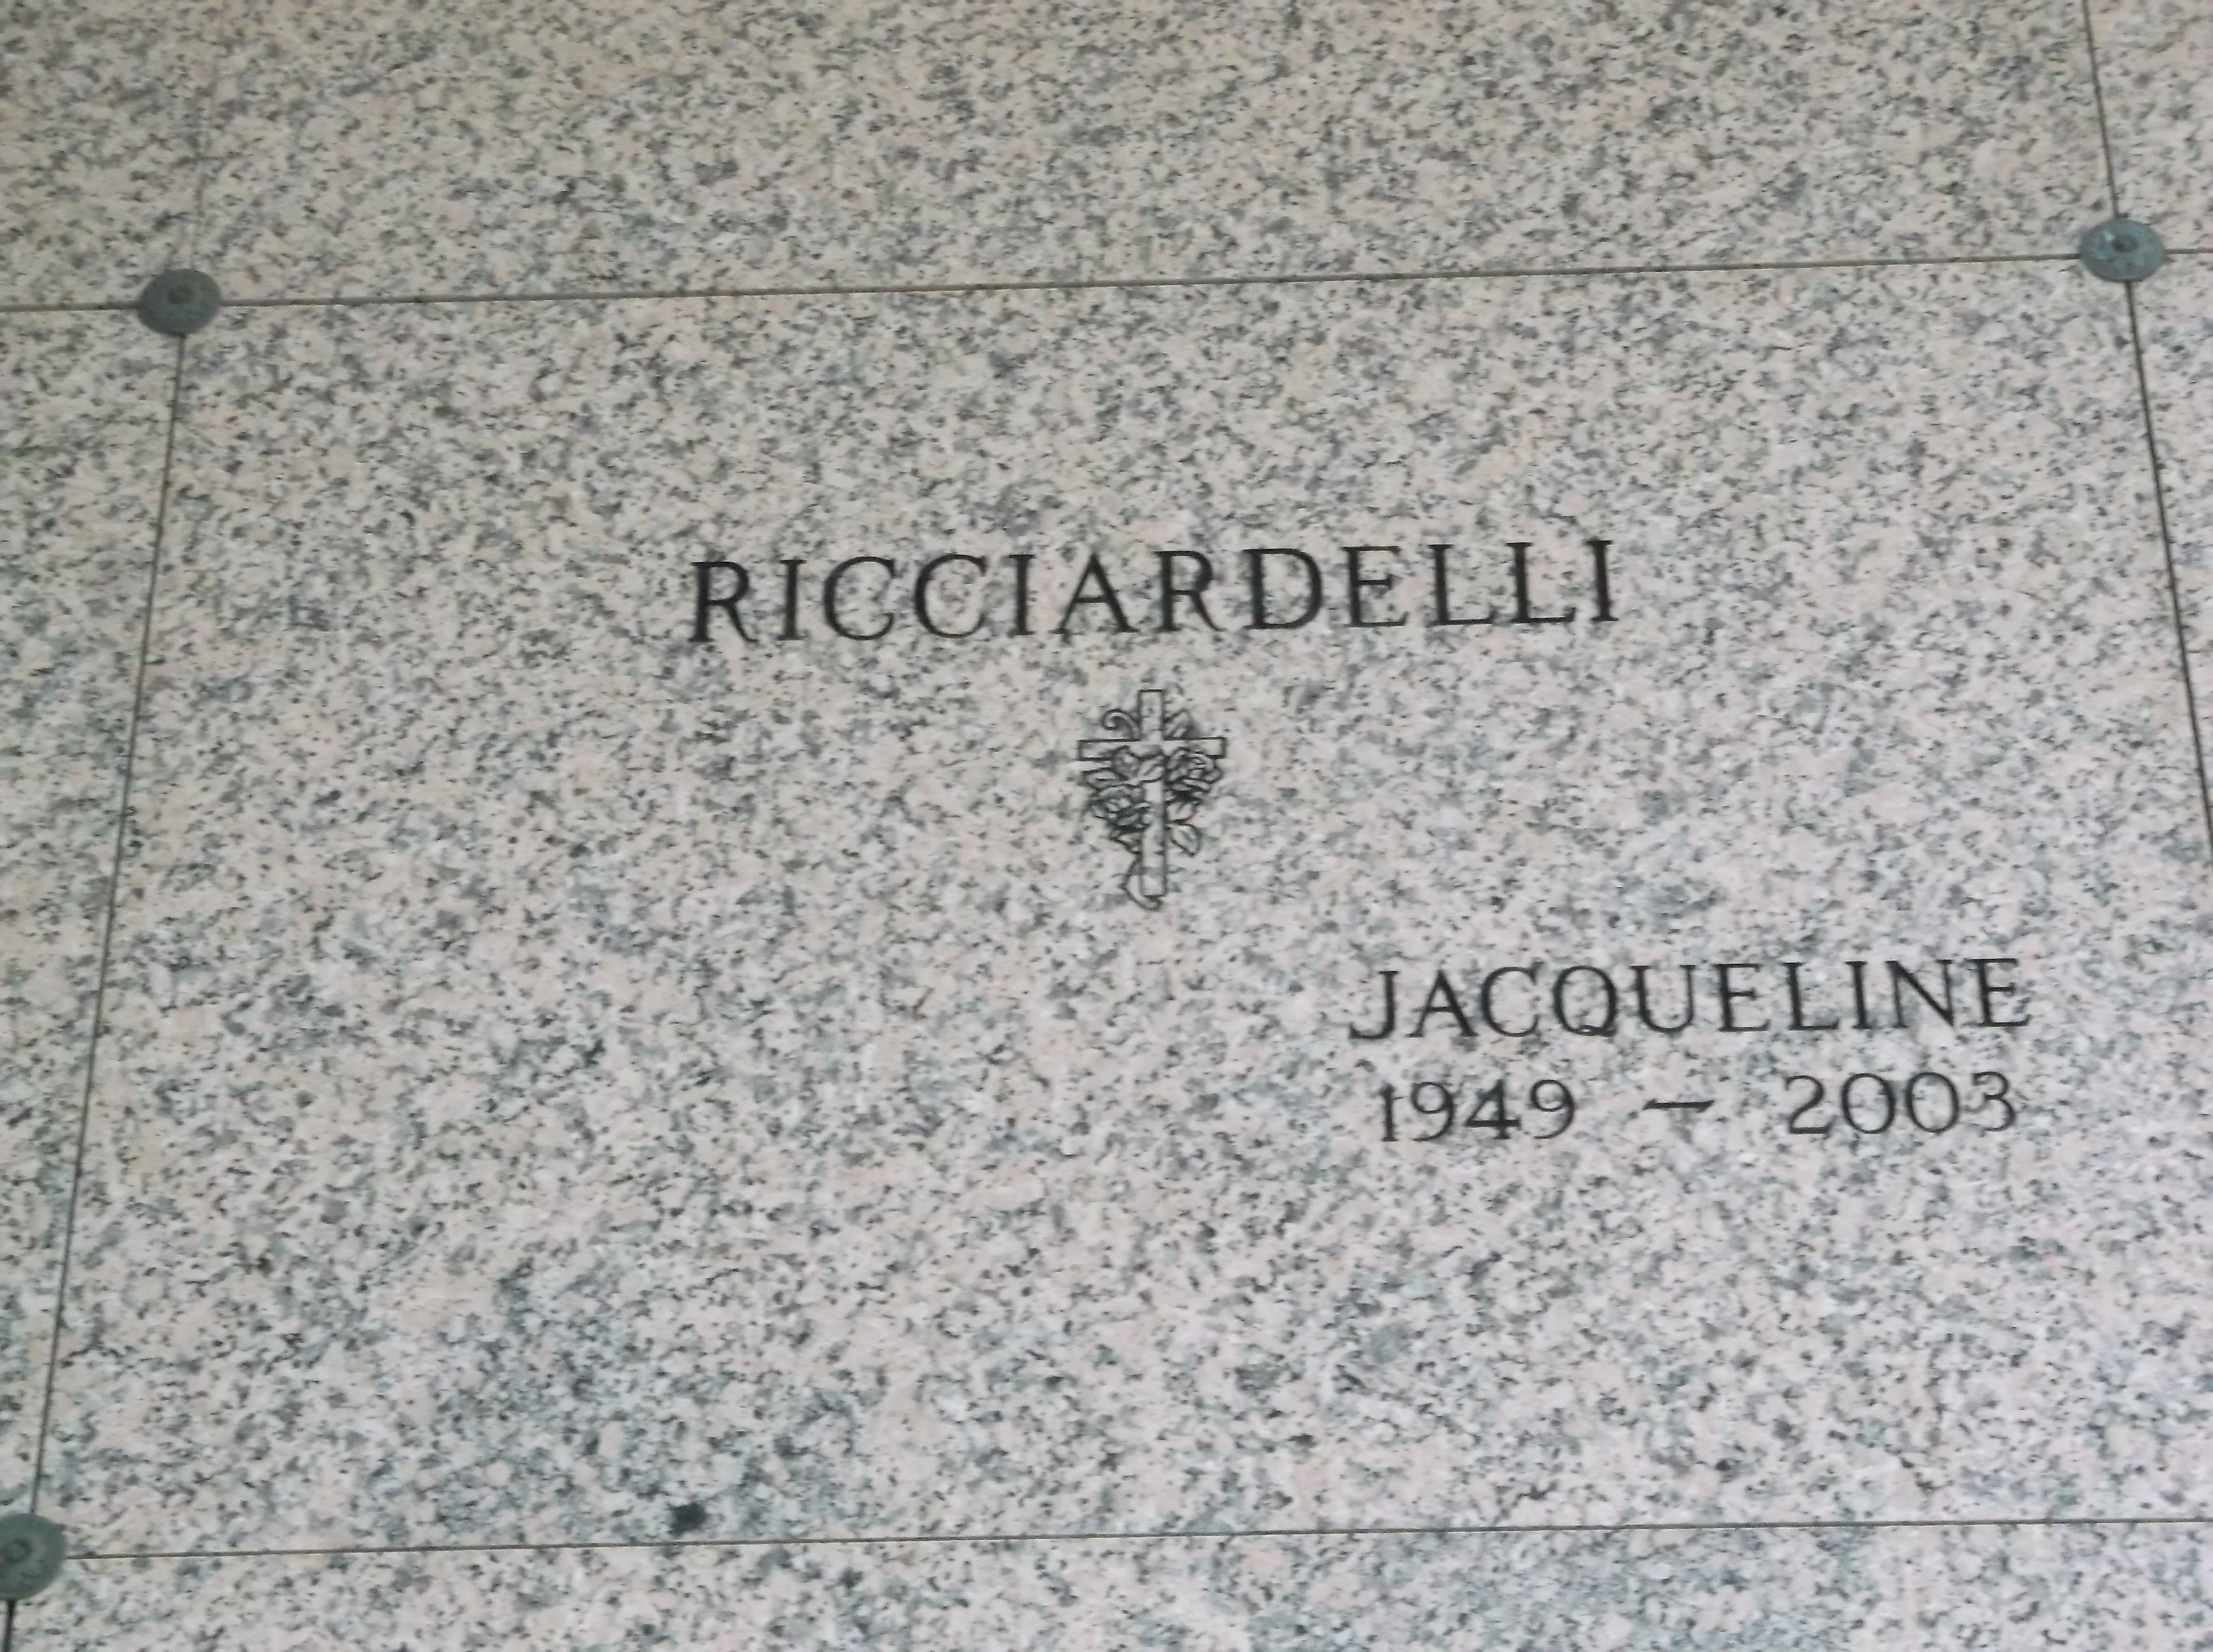 Jacqueline Ricciardelli